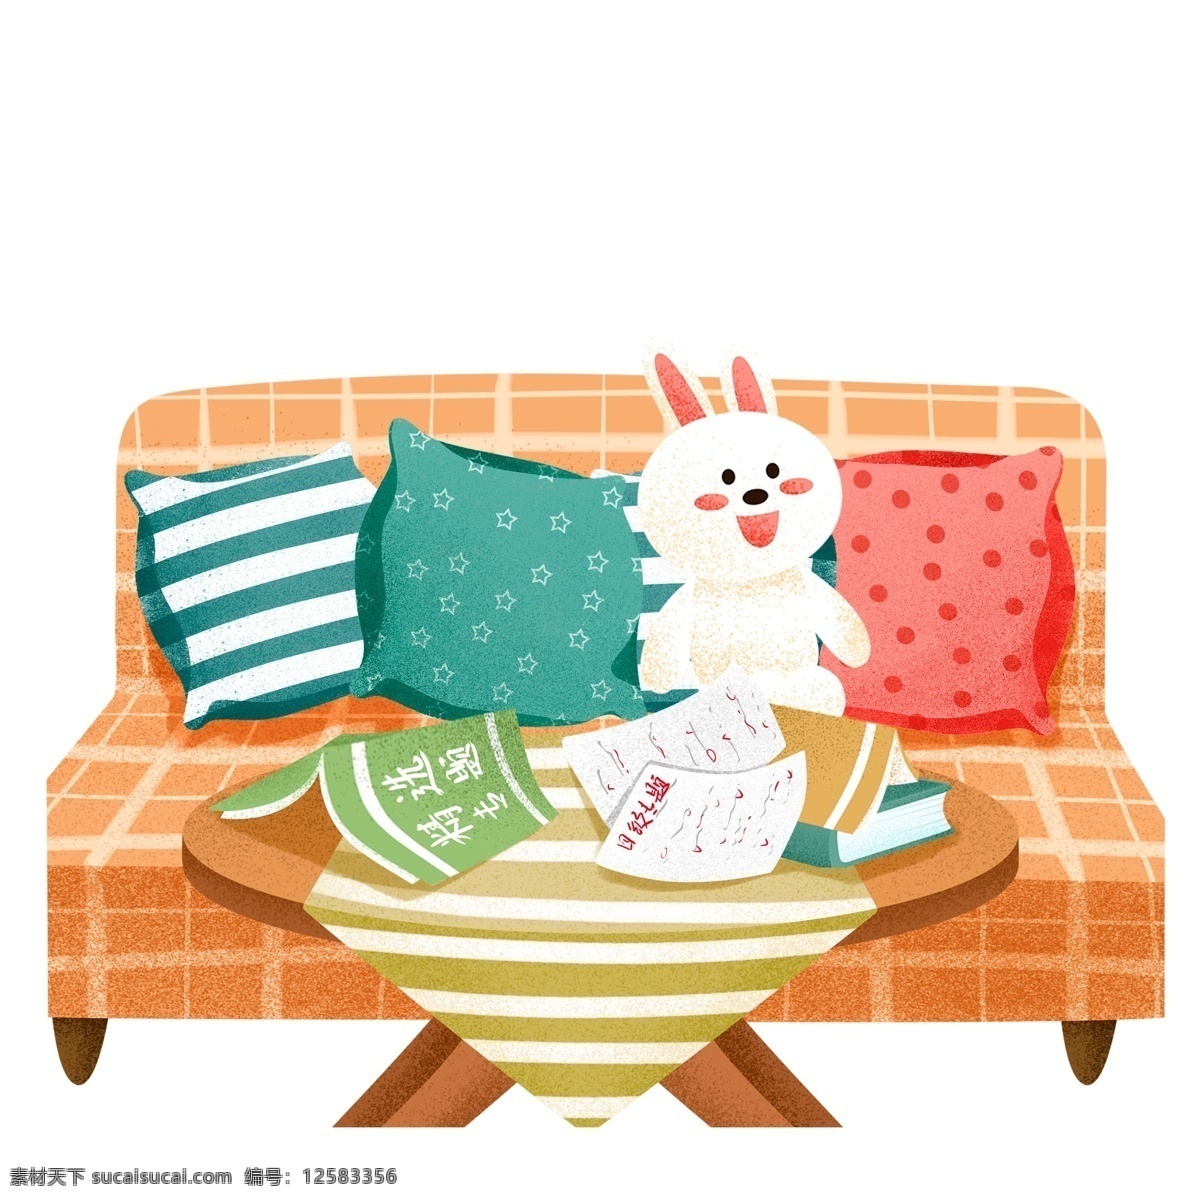 彩绘 沙发 桌子 元素 小清新 家居 兔子玩偶 插画元素